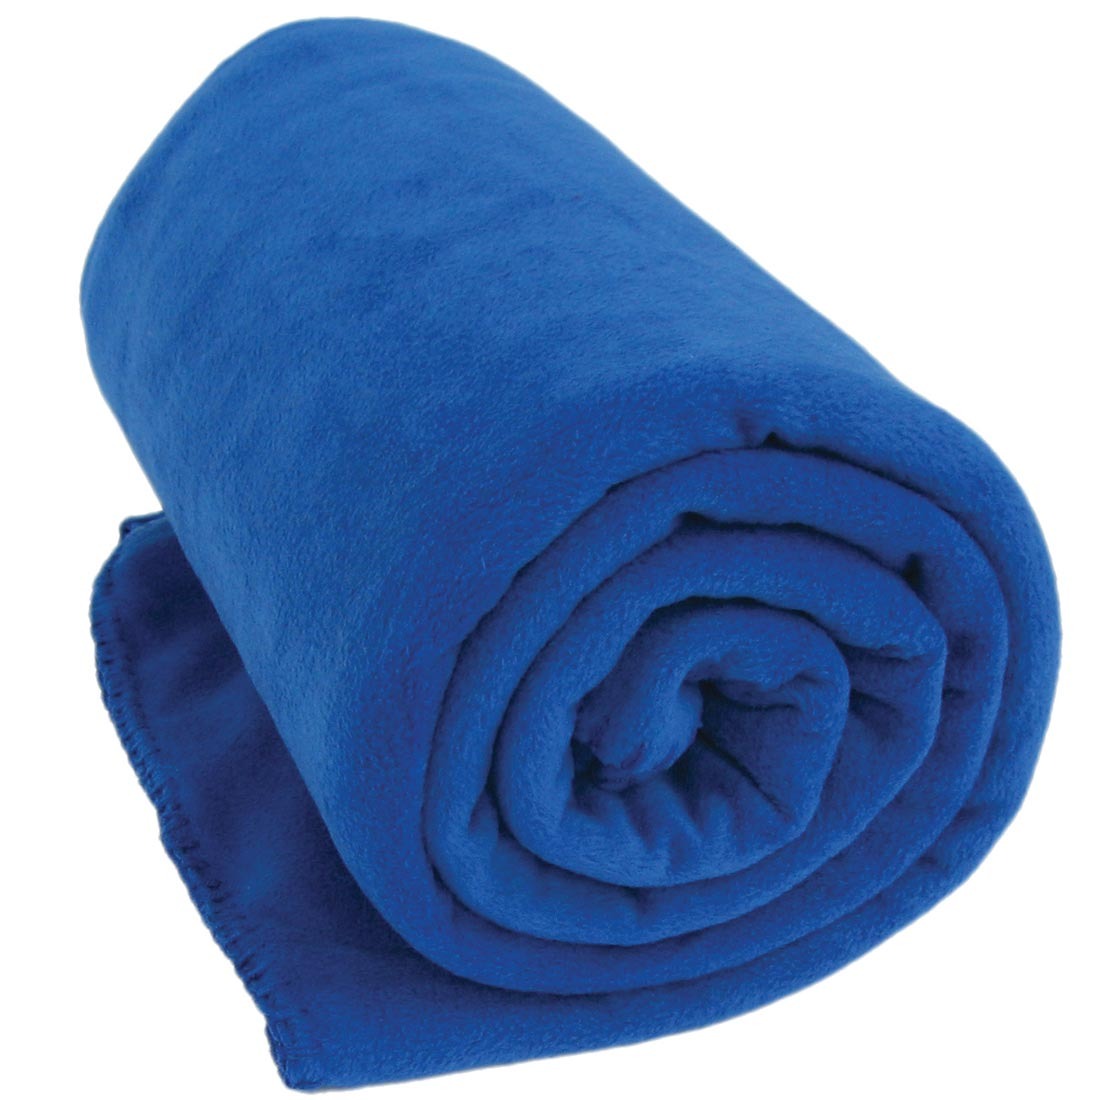 Cobertor De Tv Com Mangas Solteiro Azul Loani R 36,90